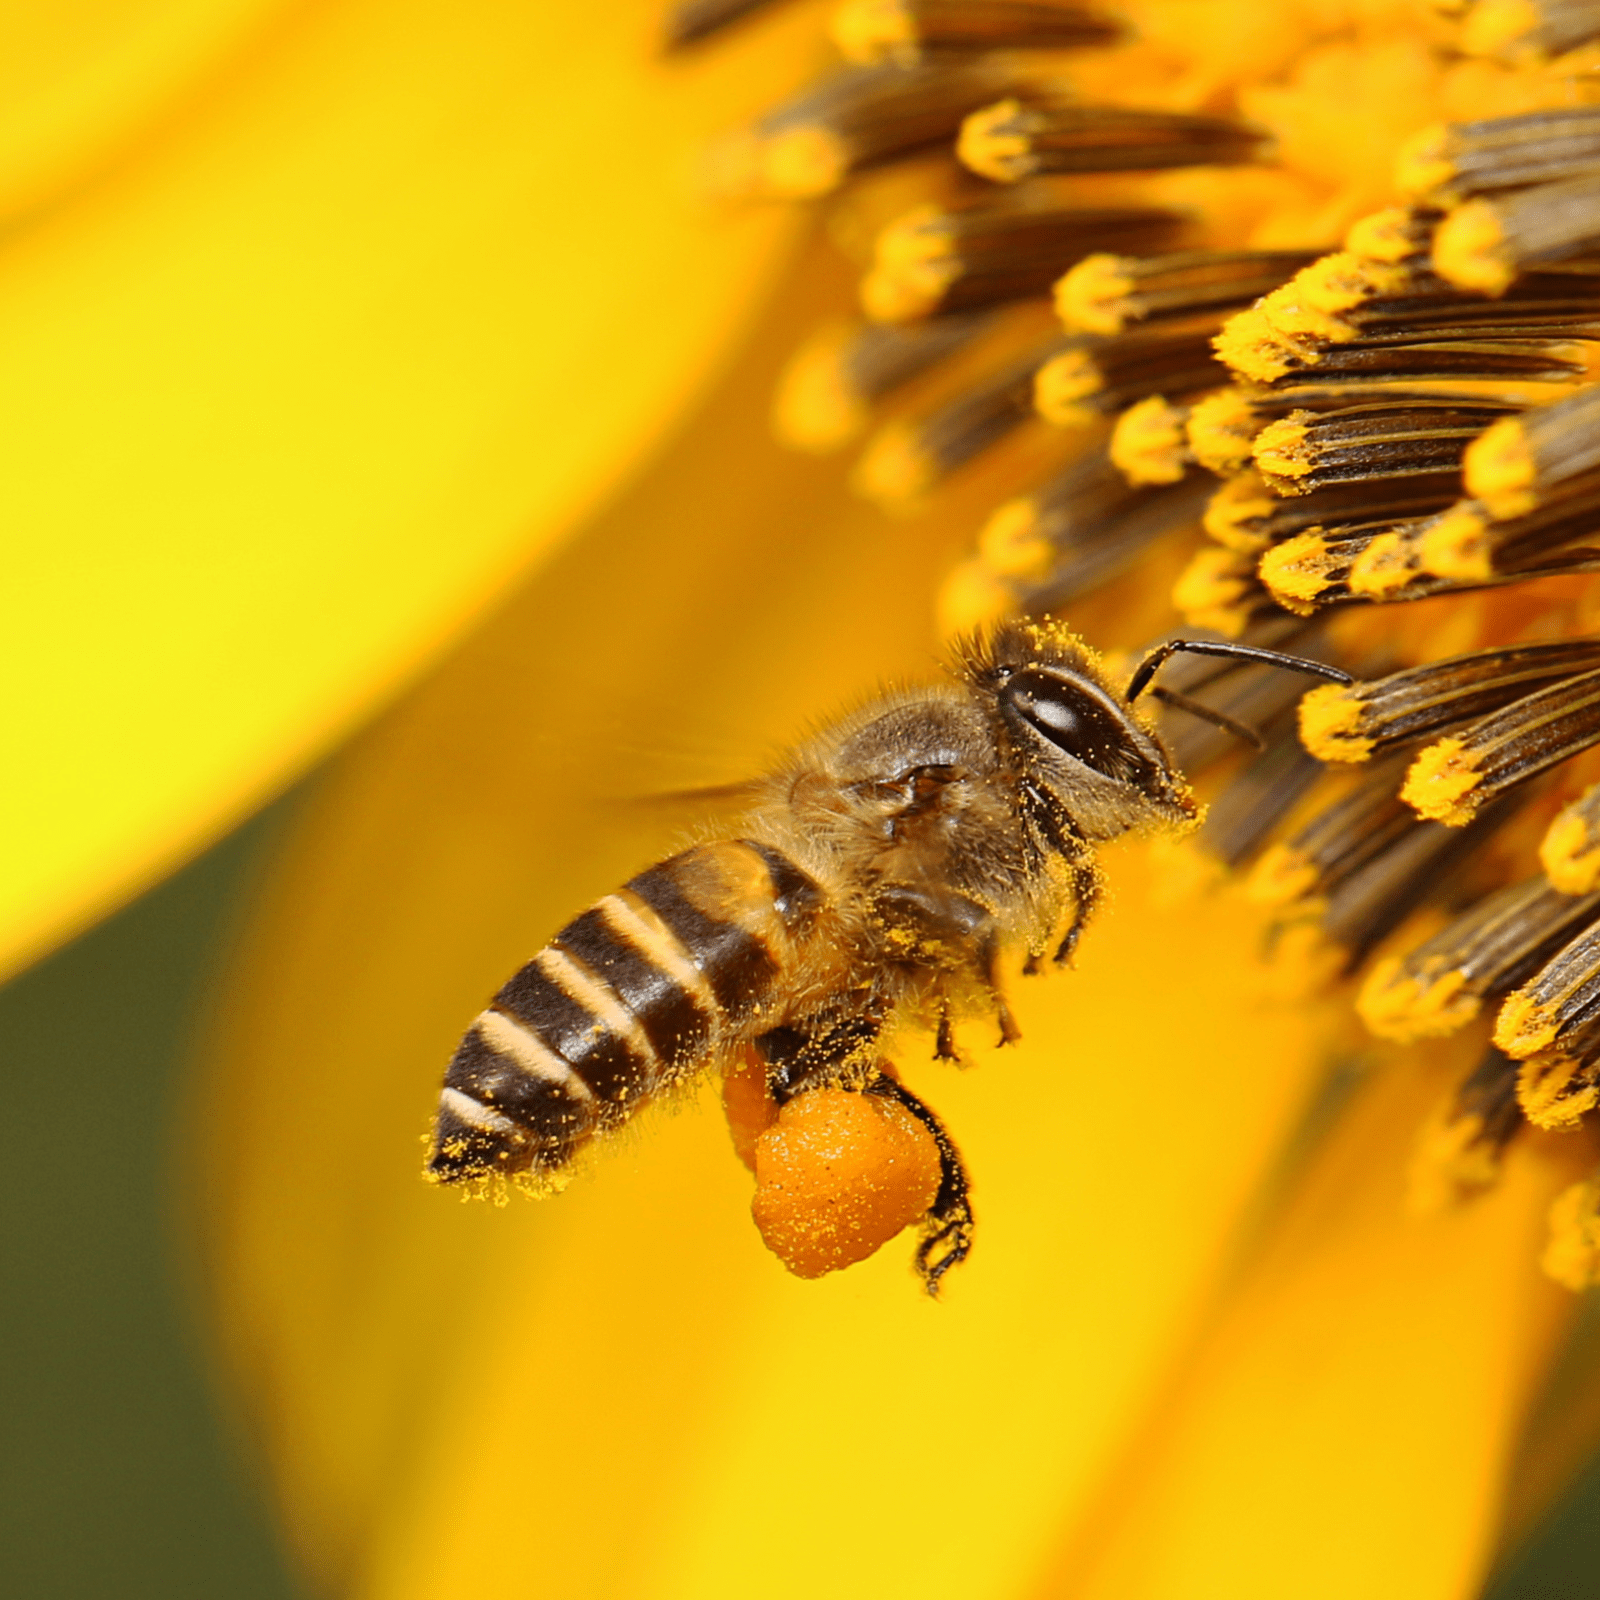 Polen de abeja: porque es bueno para nuestro organismo